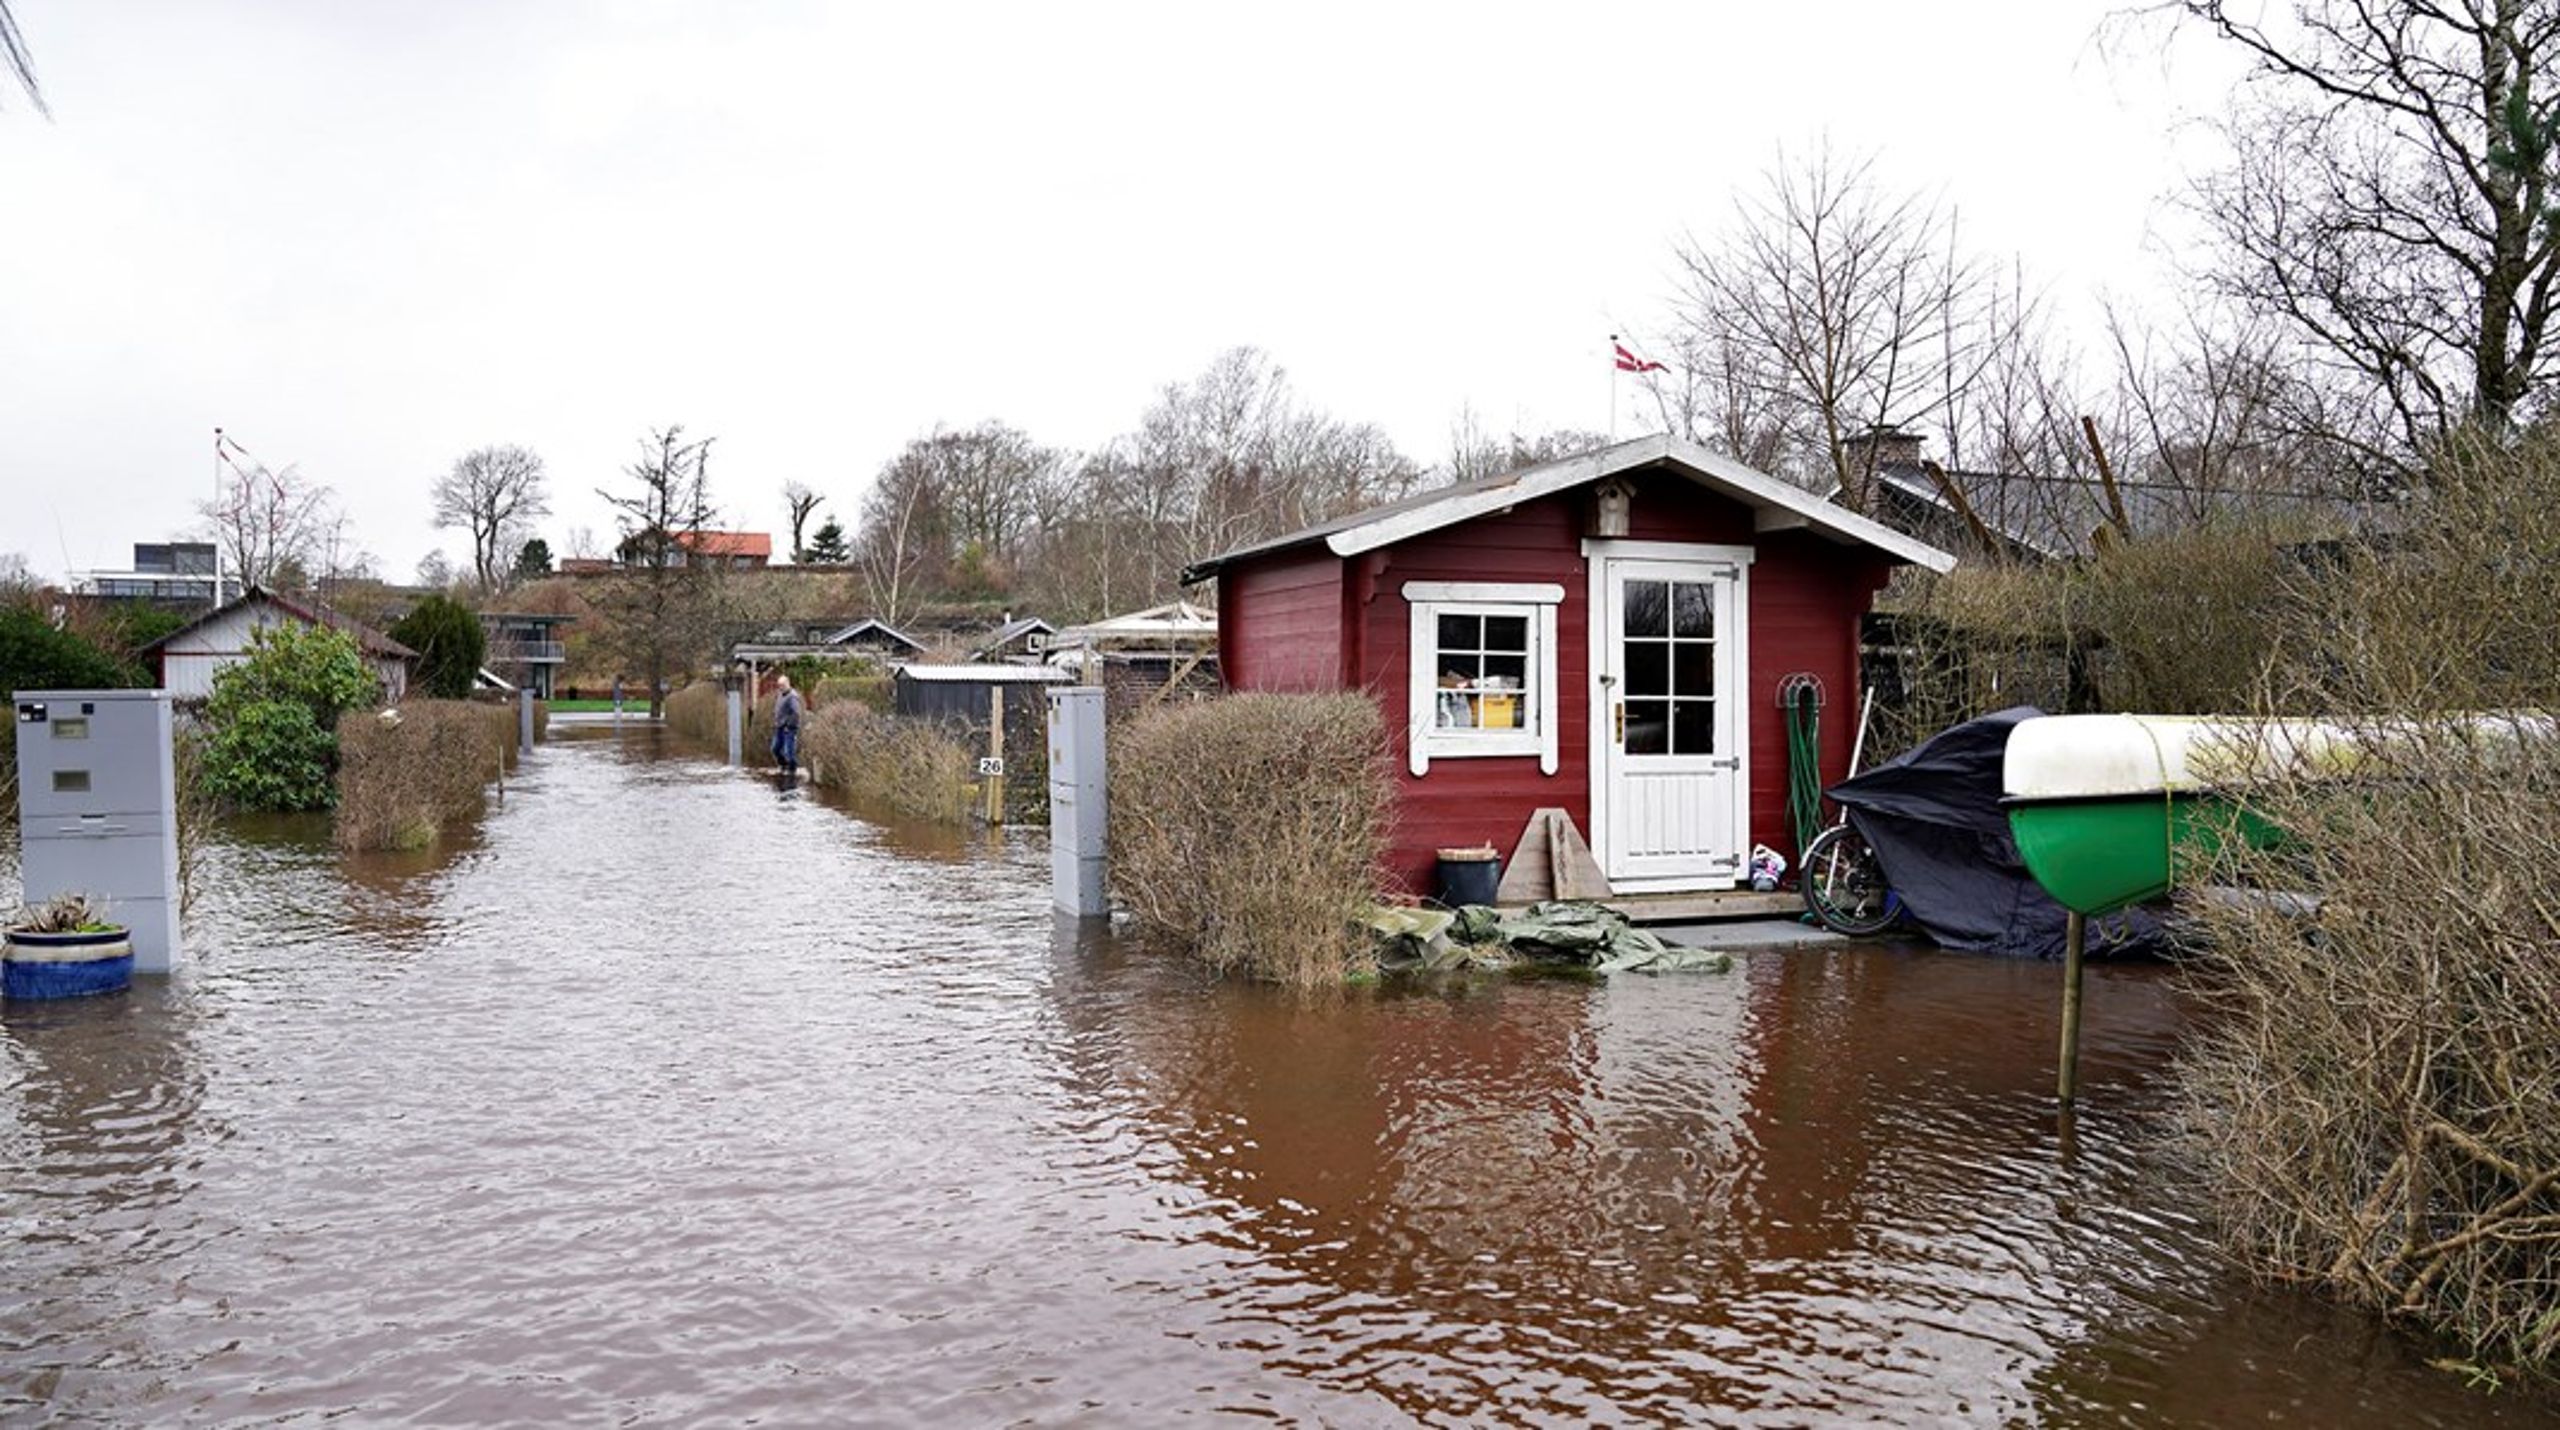 De&nbsp;oversvømmelsestruede områder&nbsp;ligger ofte i én kommune, mens mulighederne for afhjælpning er bedst i en anden kommune. Vi skal planlægge vores indsats ud fra en samlet tilgang til hele vandløbssystemet, skriver Heino Knudsen.